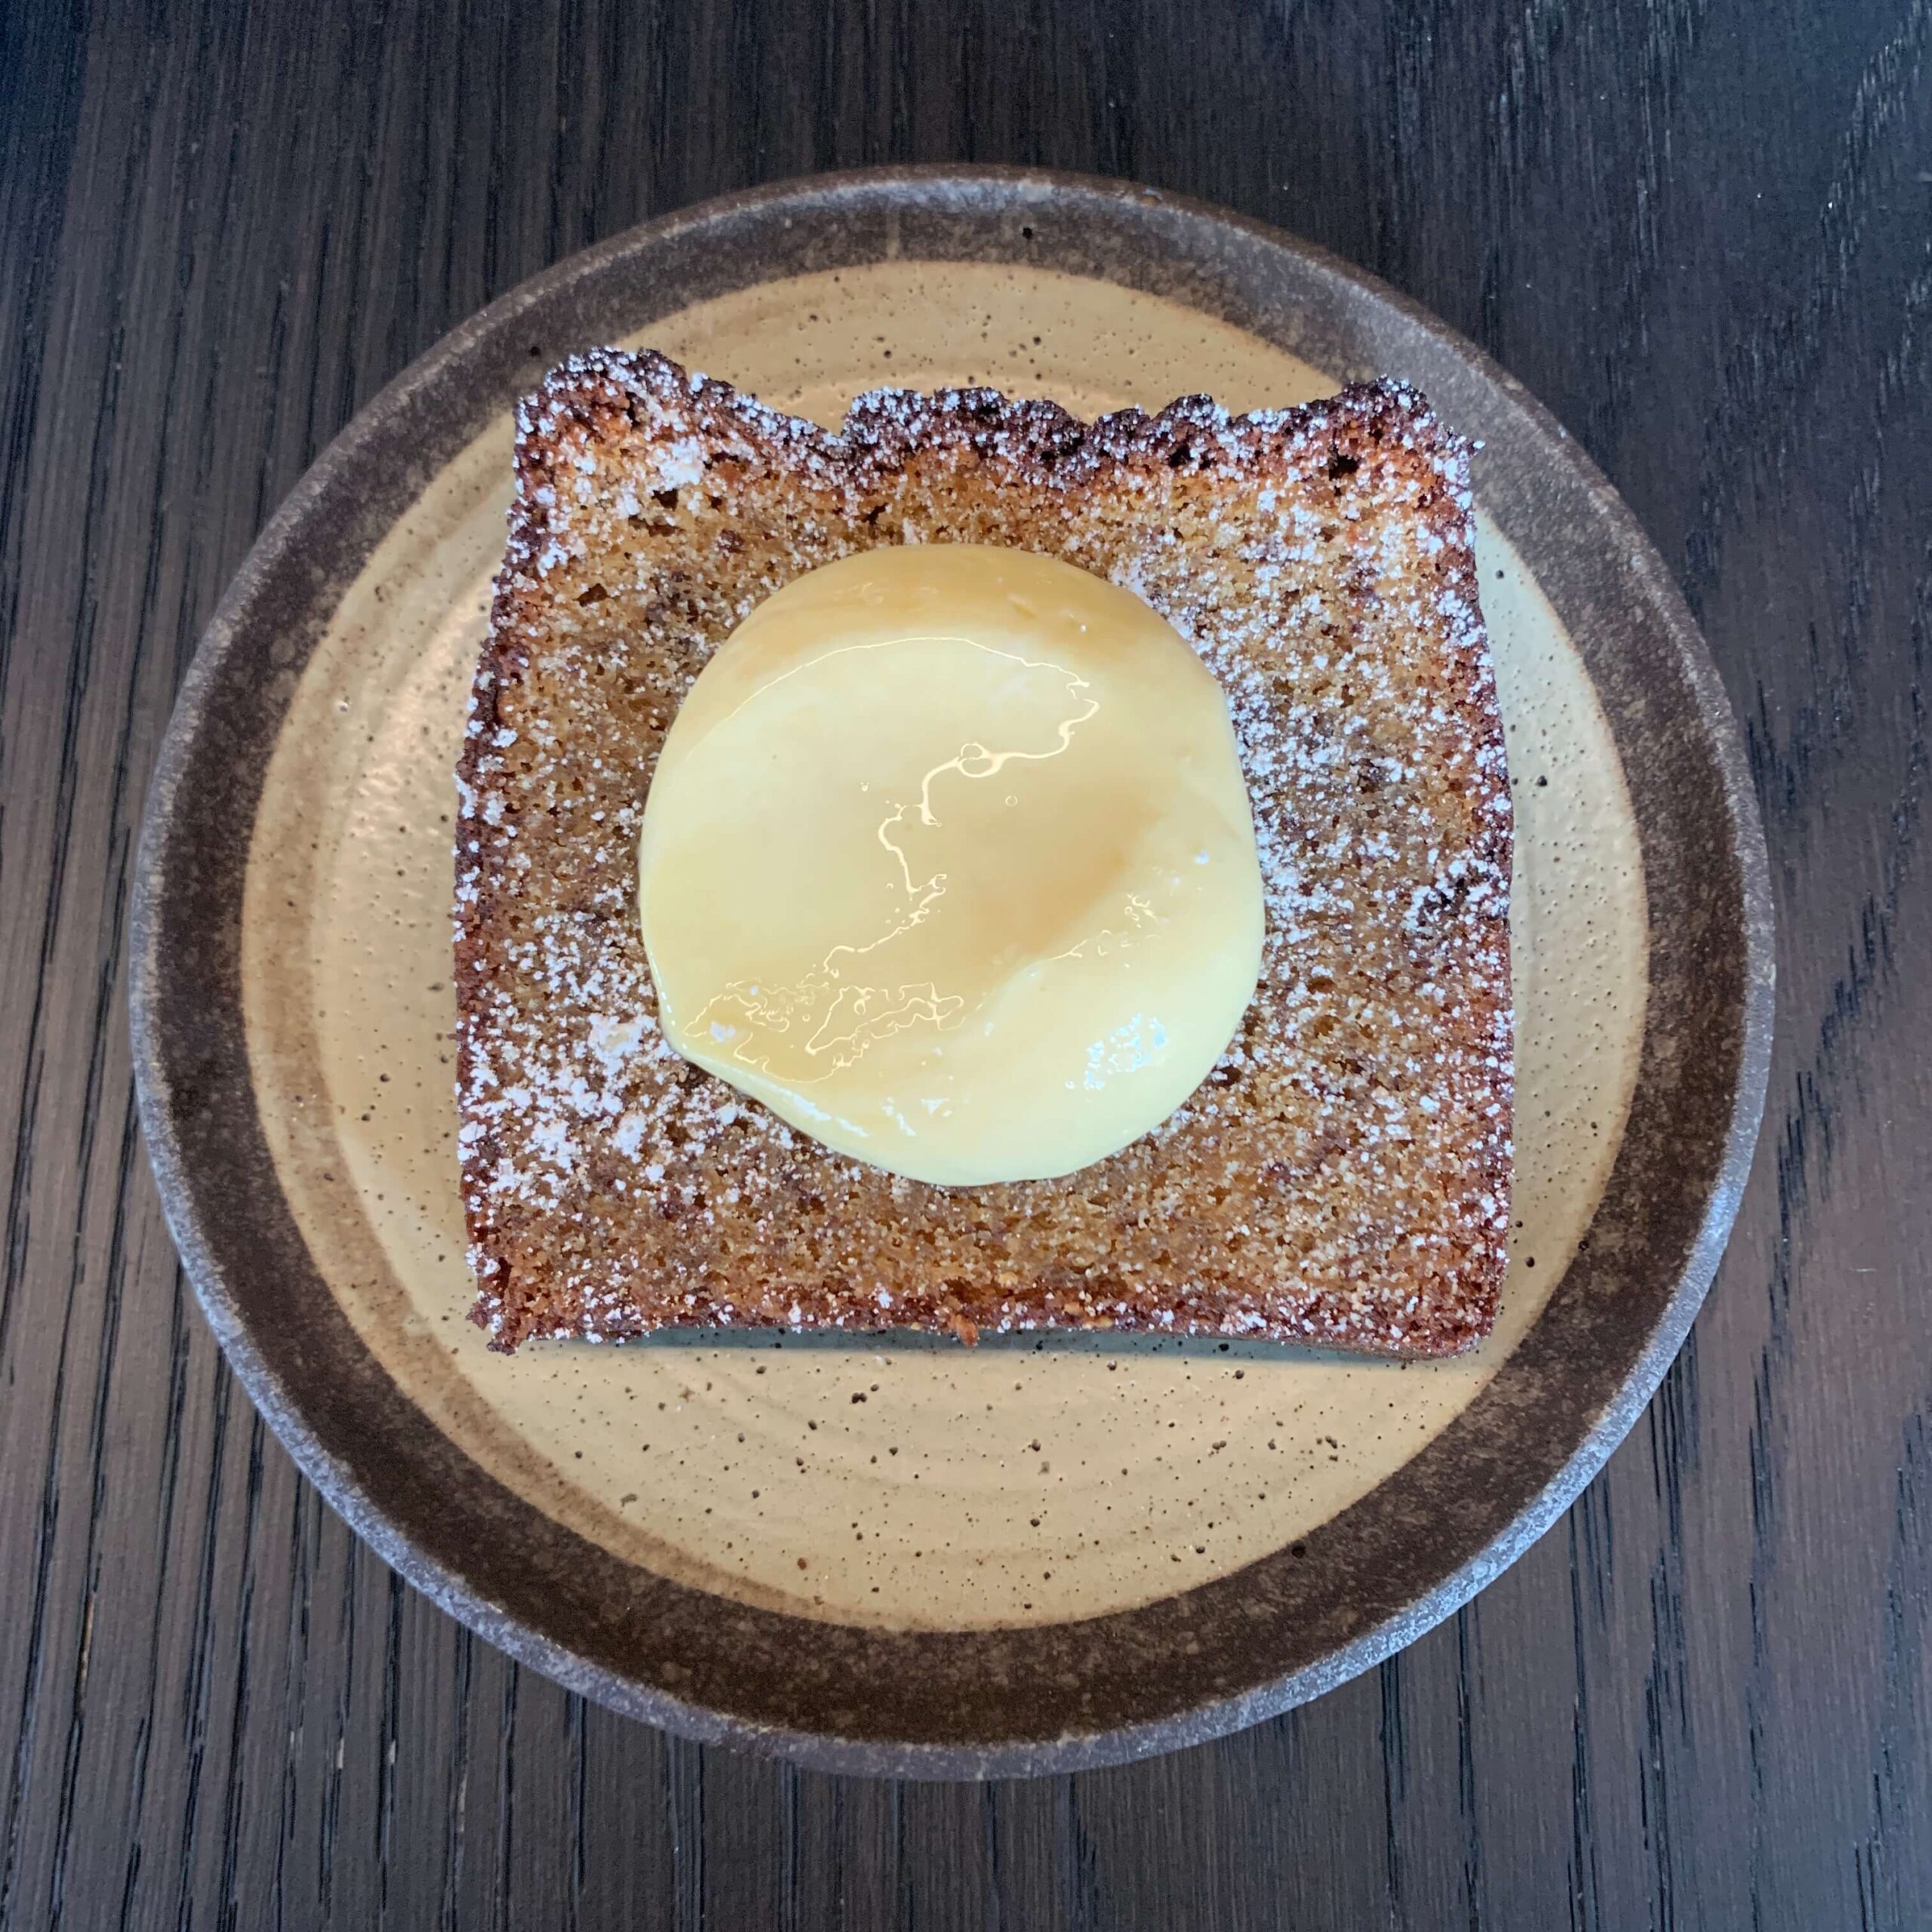 シドニーのカフェ【Edition Coffee Roasters】のメニュー「Miso banana bread（味噌バナナブレッド）」を撮影した写真